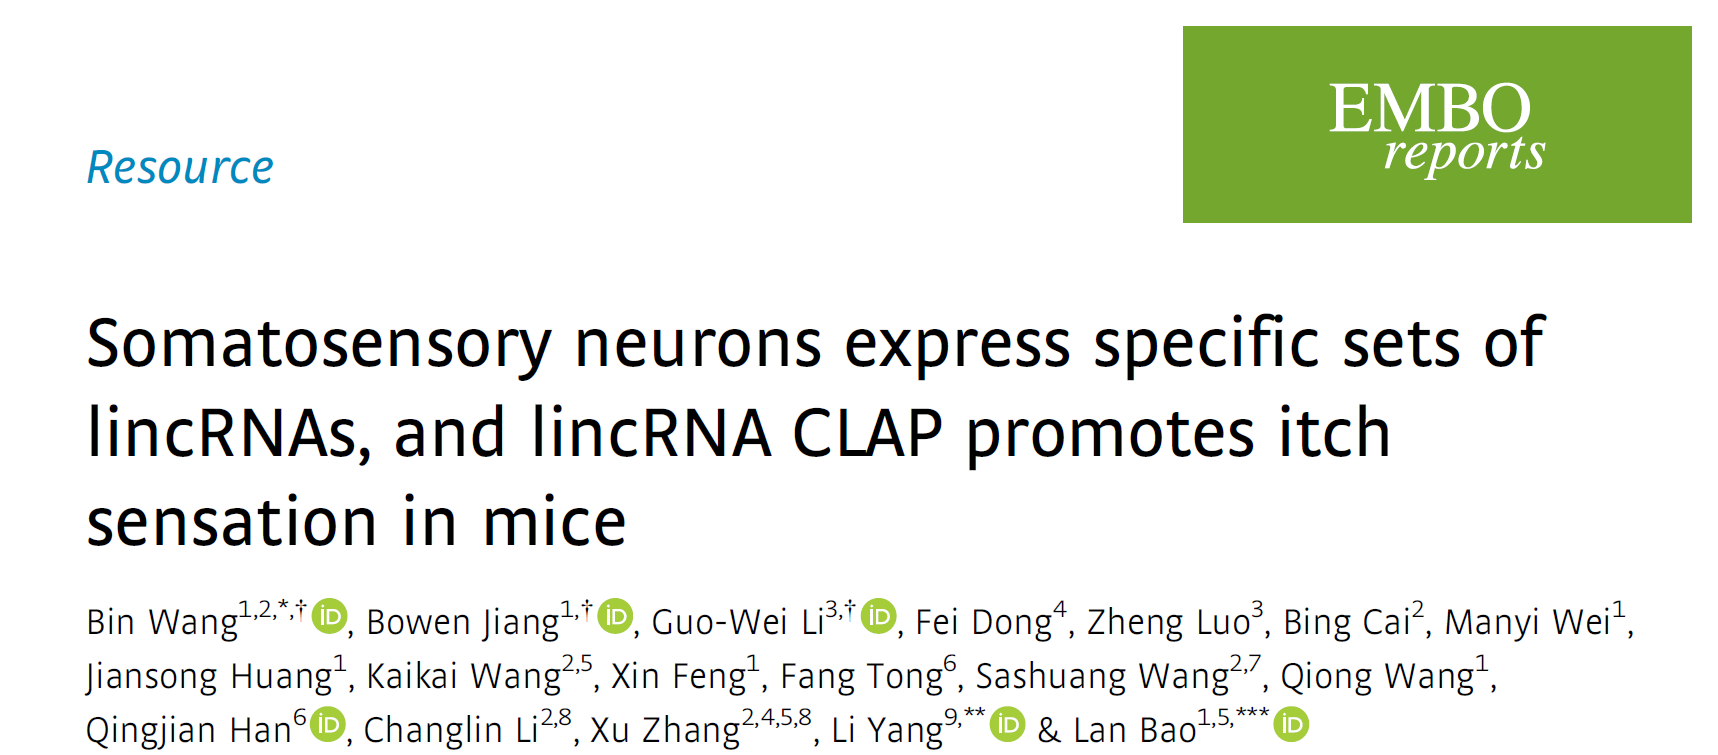 广东省智能院研究团队揭示初级感觉神经元中细胞类型特异性lincRNA的分布及其在痒觉传递中的功能